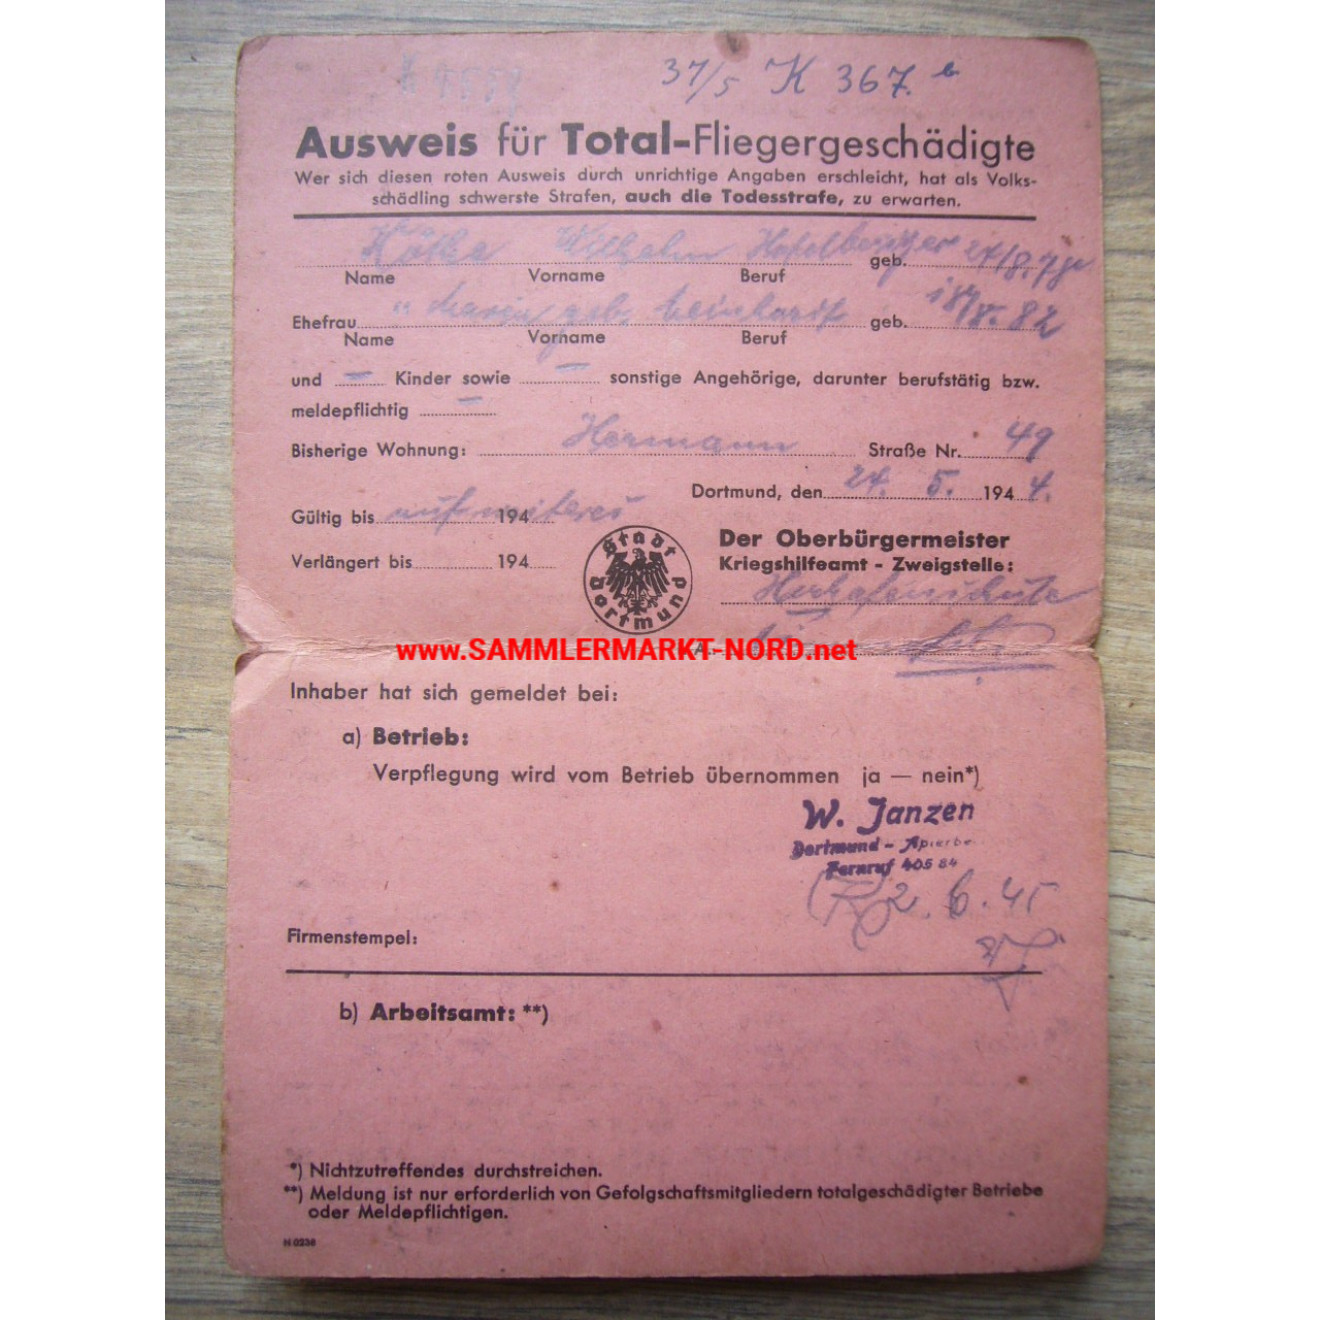 Ausweis für Total-Fliegergeschädigte - Dortmund 1944